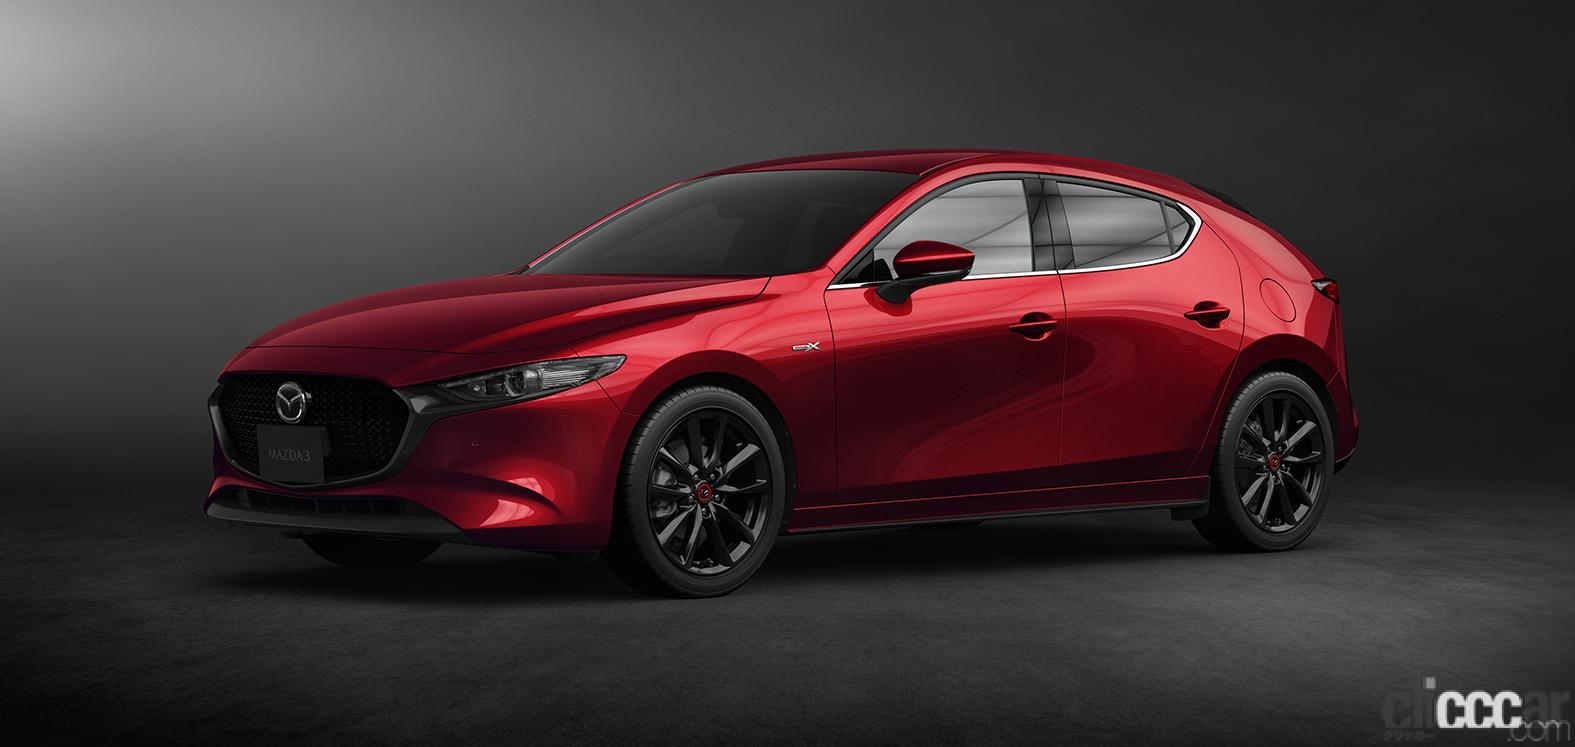 マツダが制御プログラムを最新化する Mazda Spirit Upgrade で利用する サービスキャンペーンとは 週刊クルマのミライ Clicccar Com